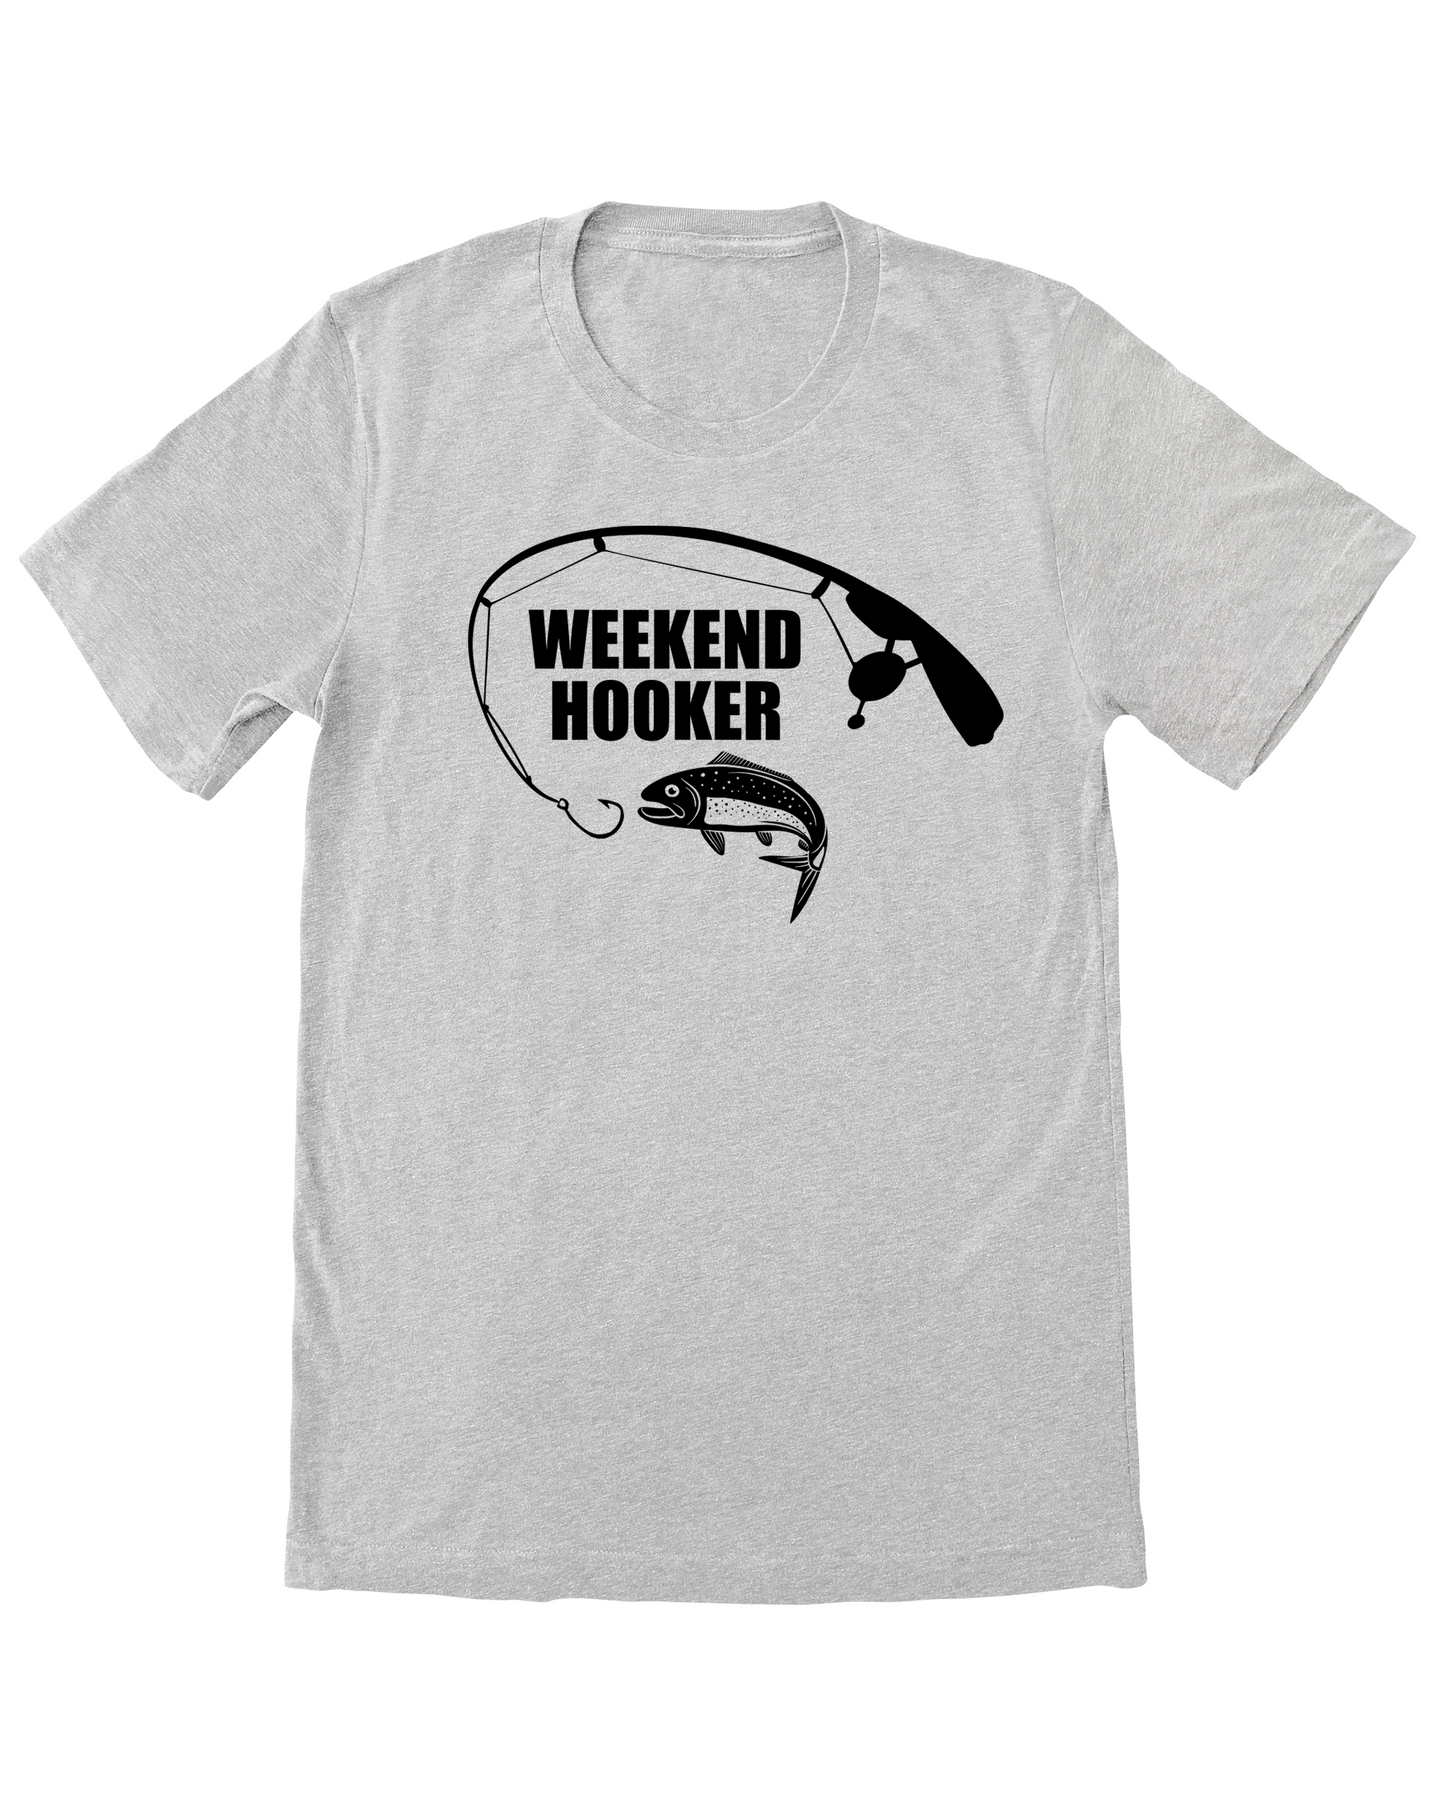 Weekend Hooker | Men's Graphic Top